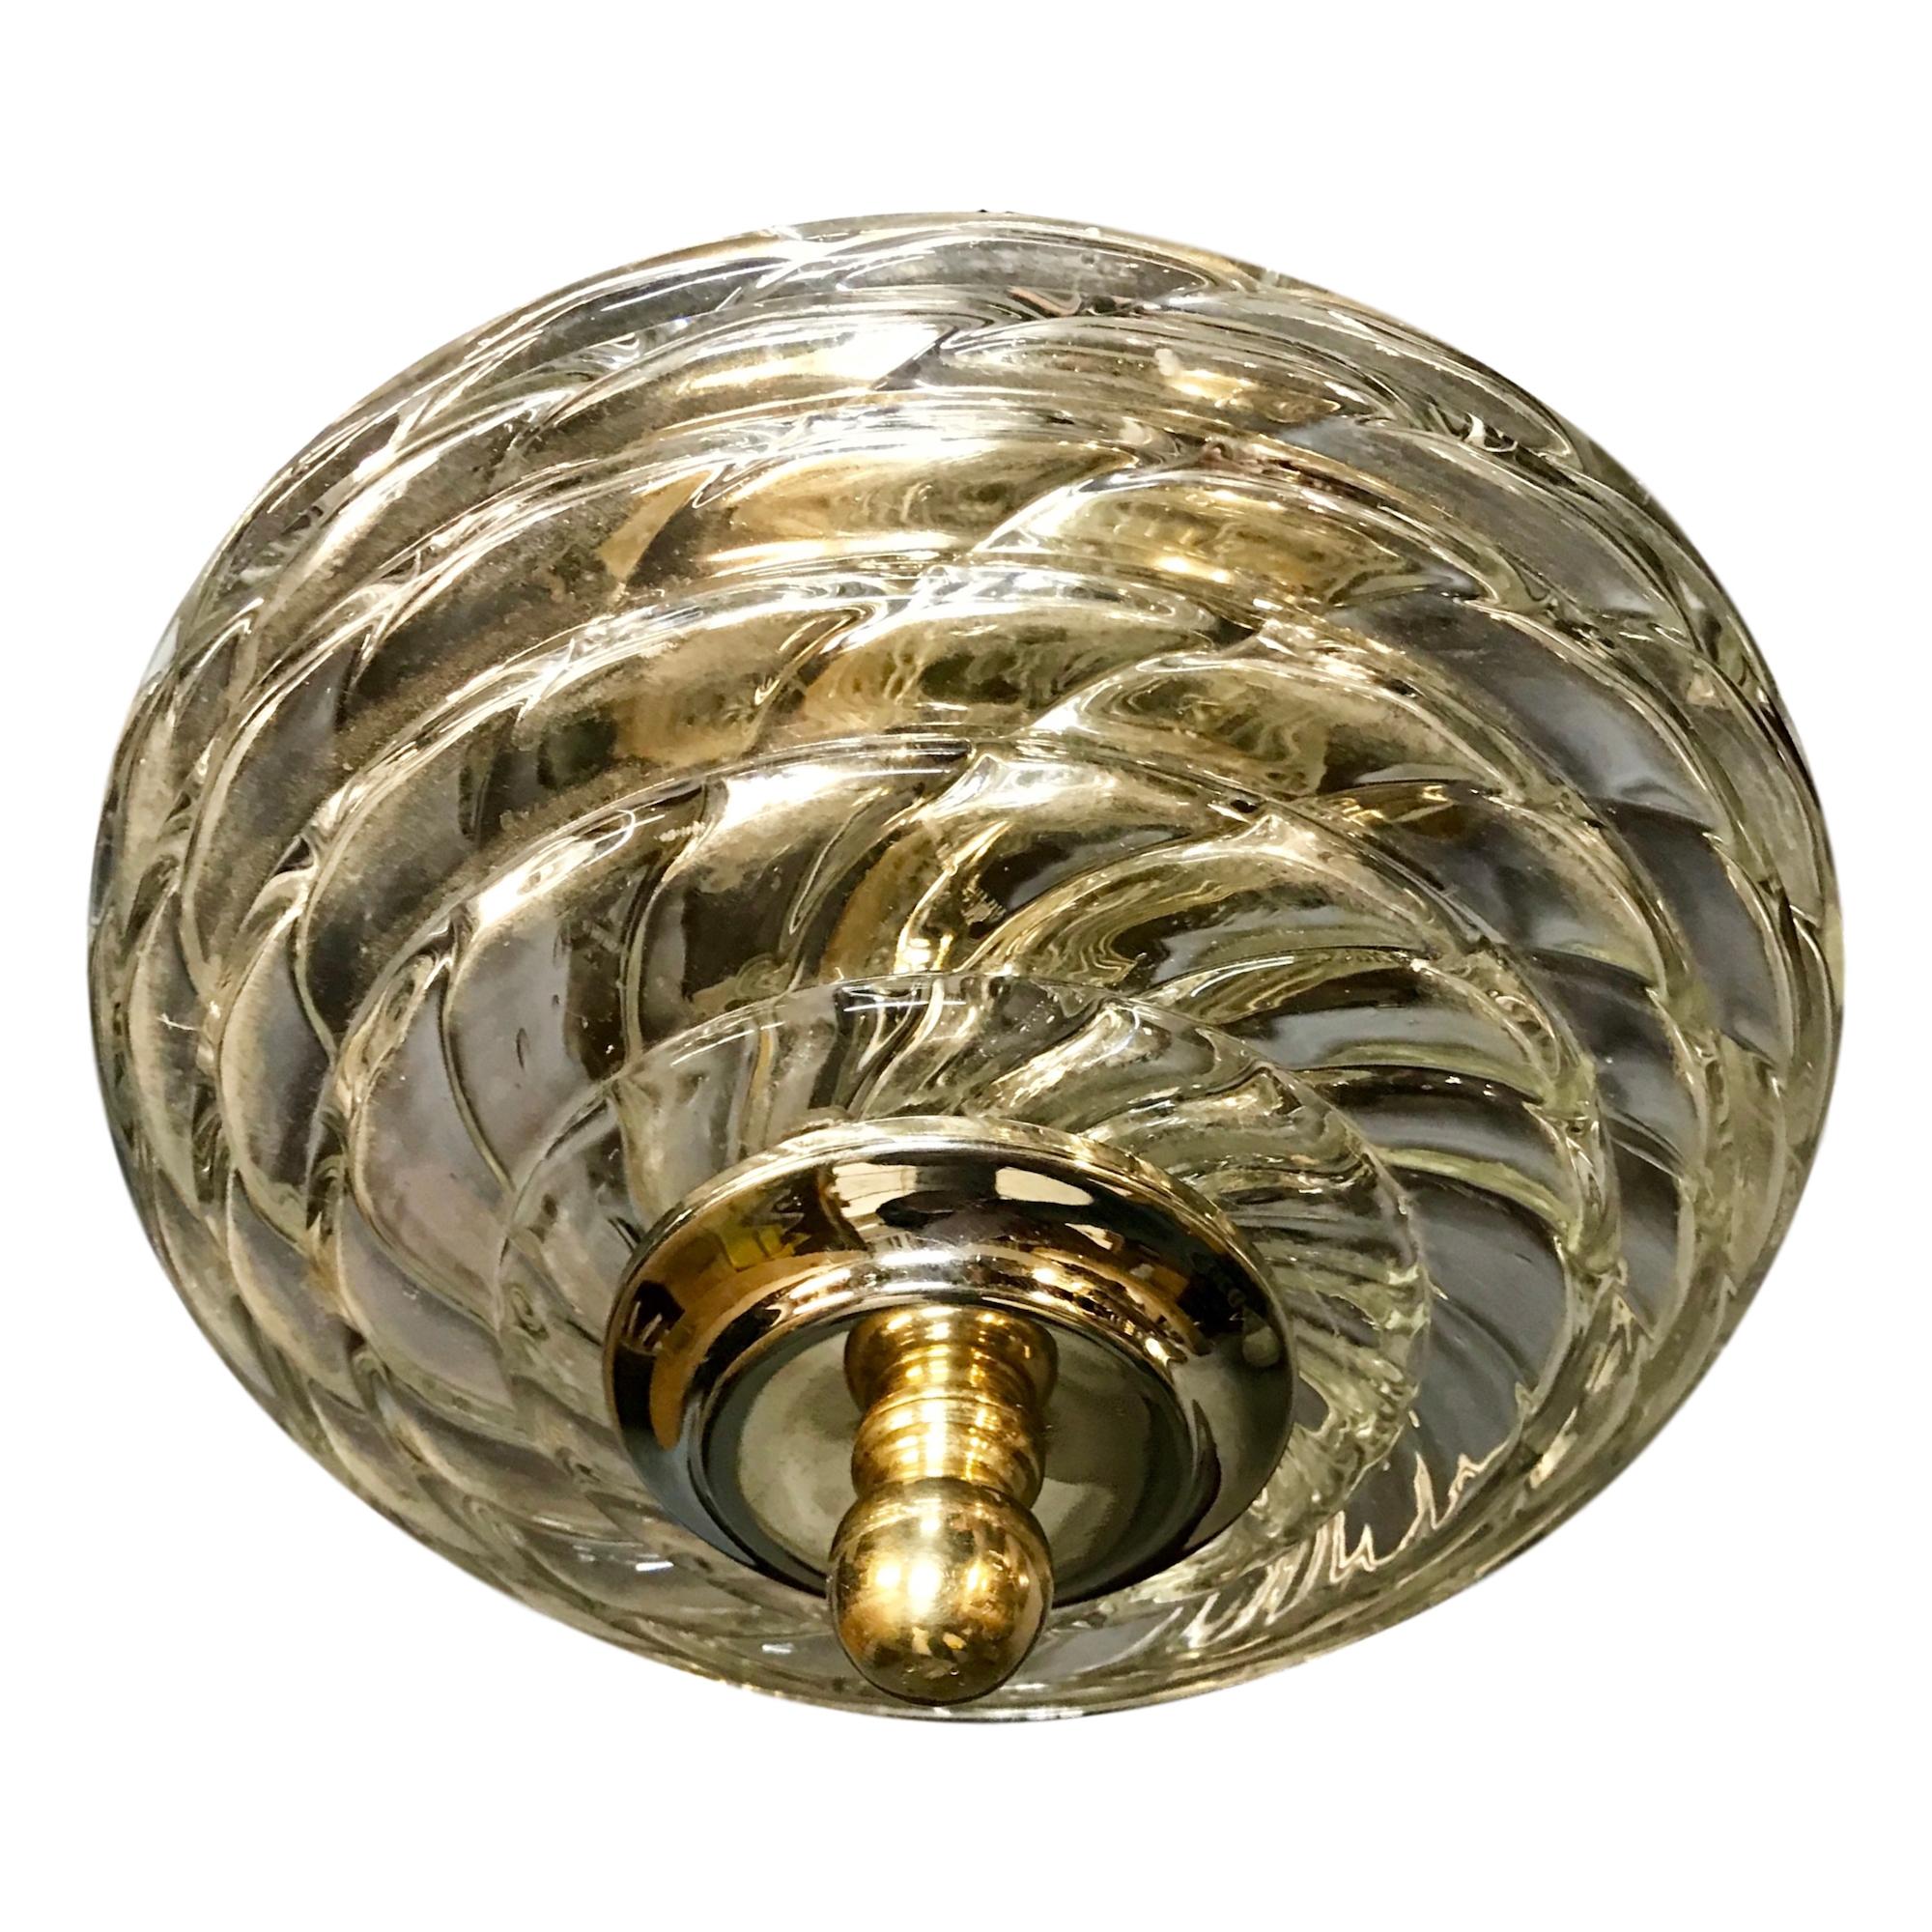 Plafonnier à encastrer en verre de Murano avec éclairage intérieur, datant des années 1950.

Mesures :
Chute : 6